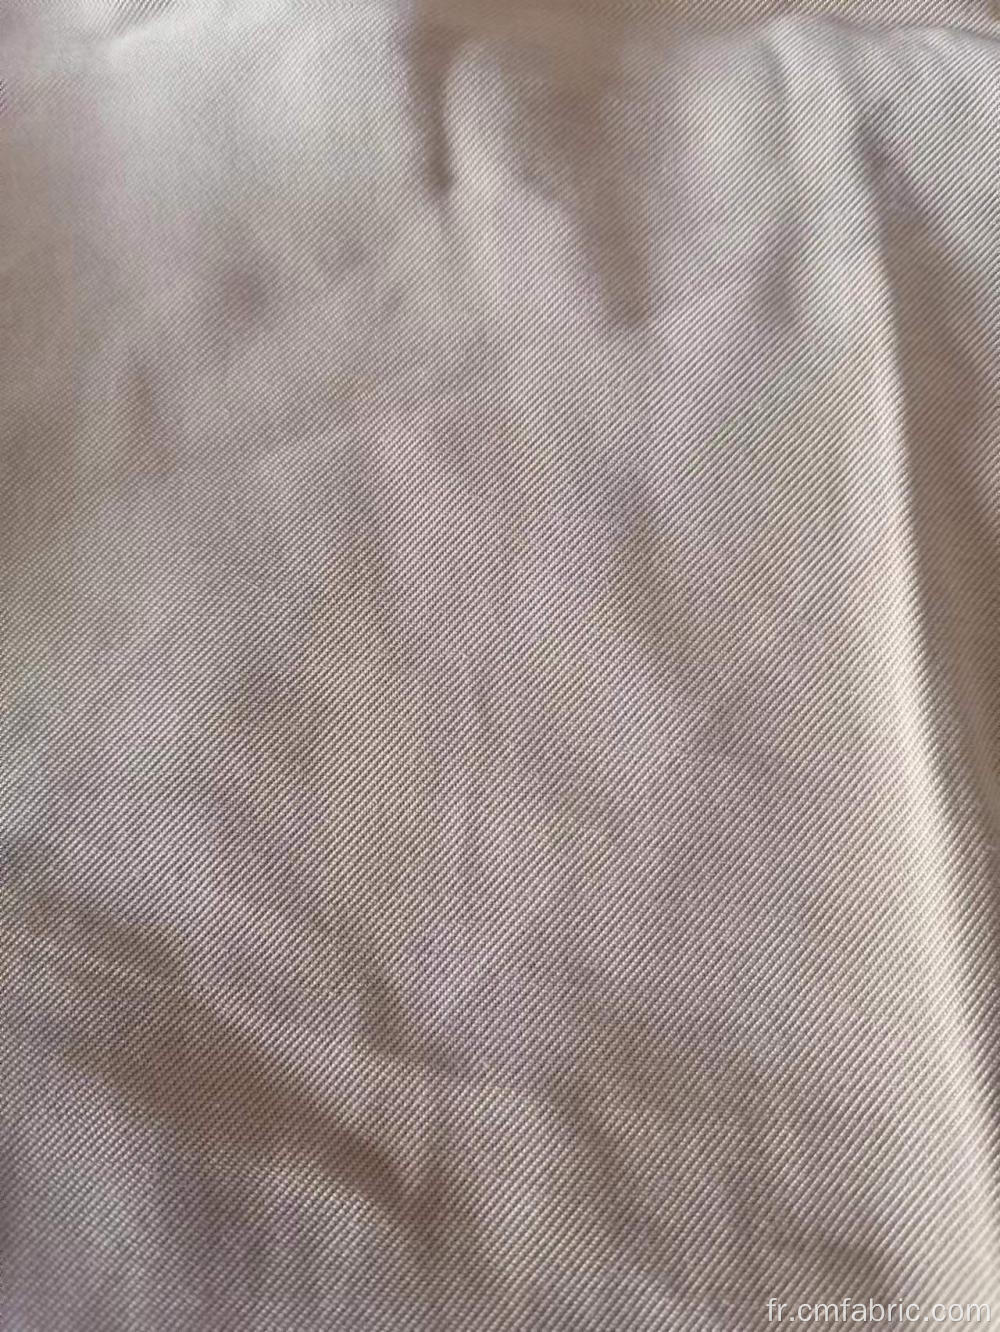 Tence à serre en polyester tissée Tencel comme tissu comme tissu